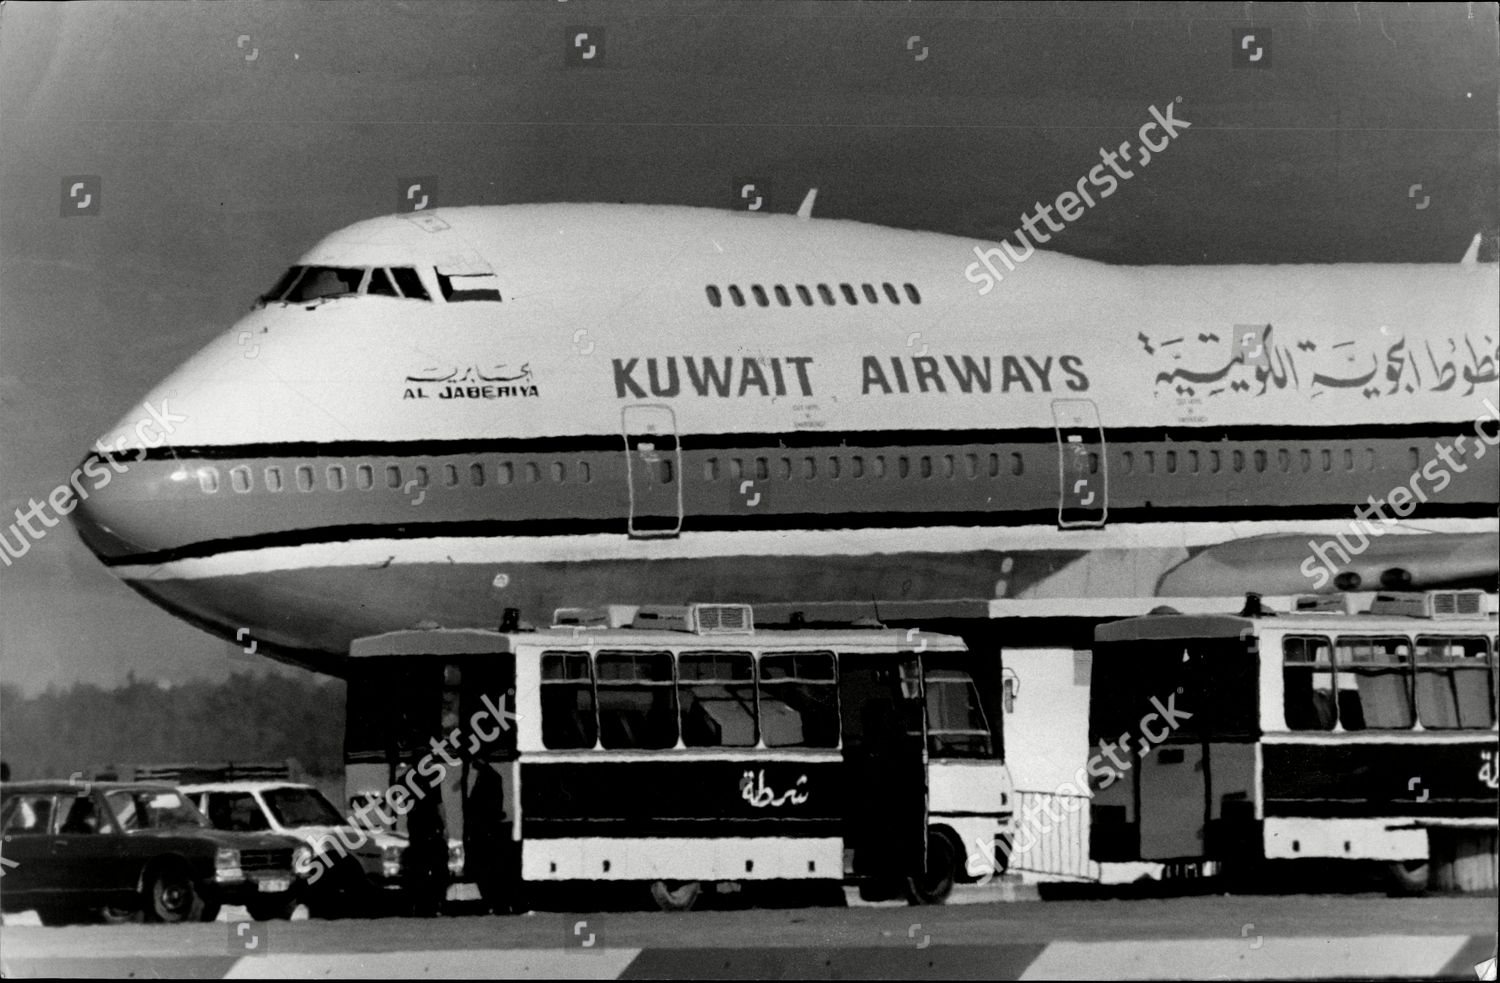 Kuwait Airways Hijack